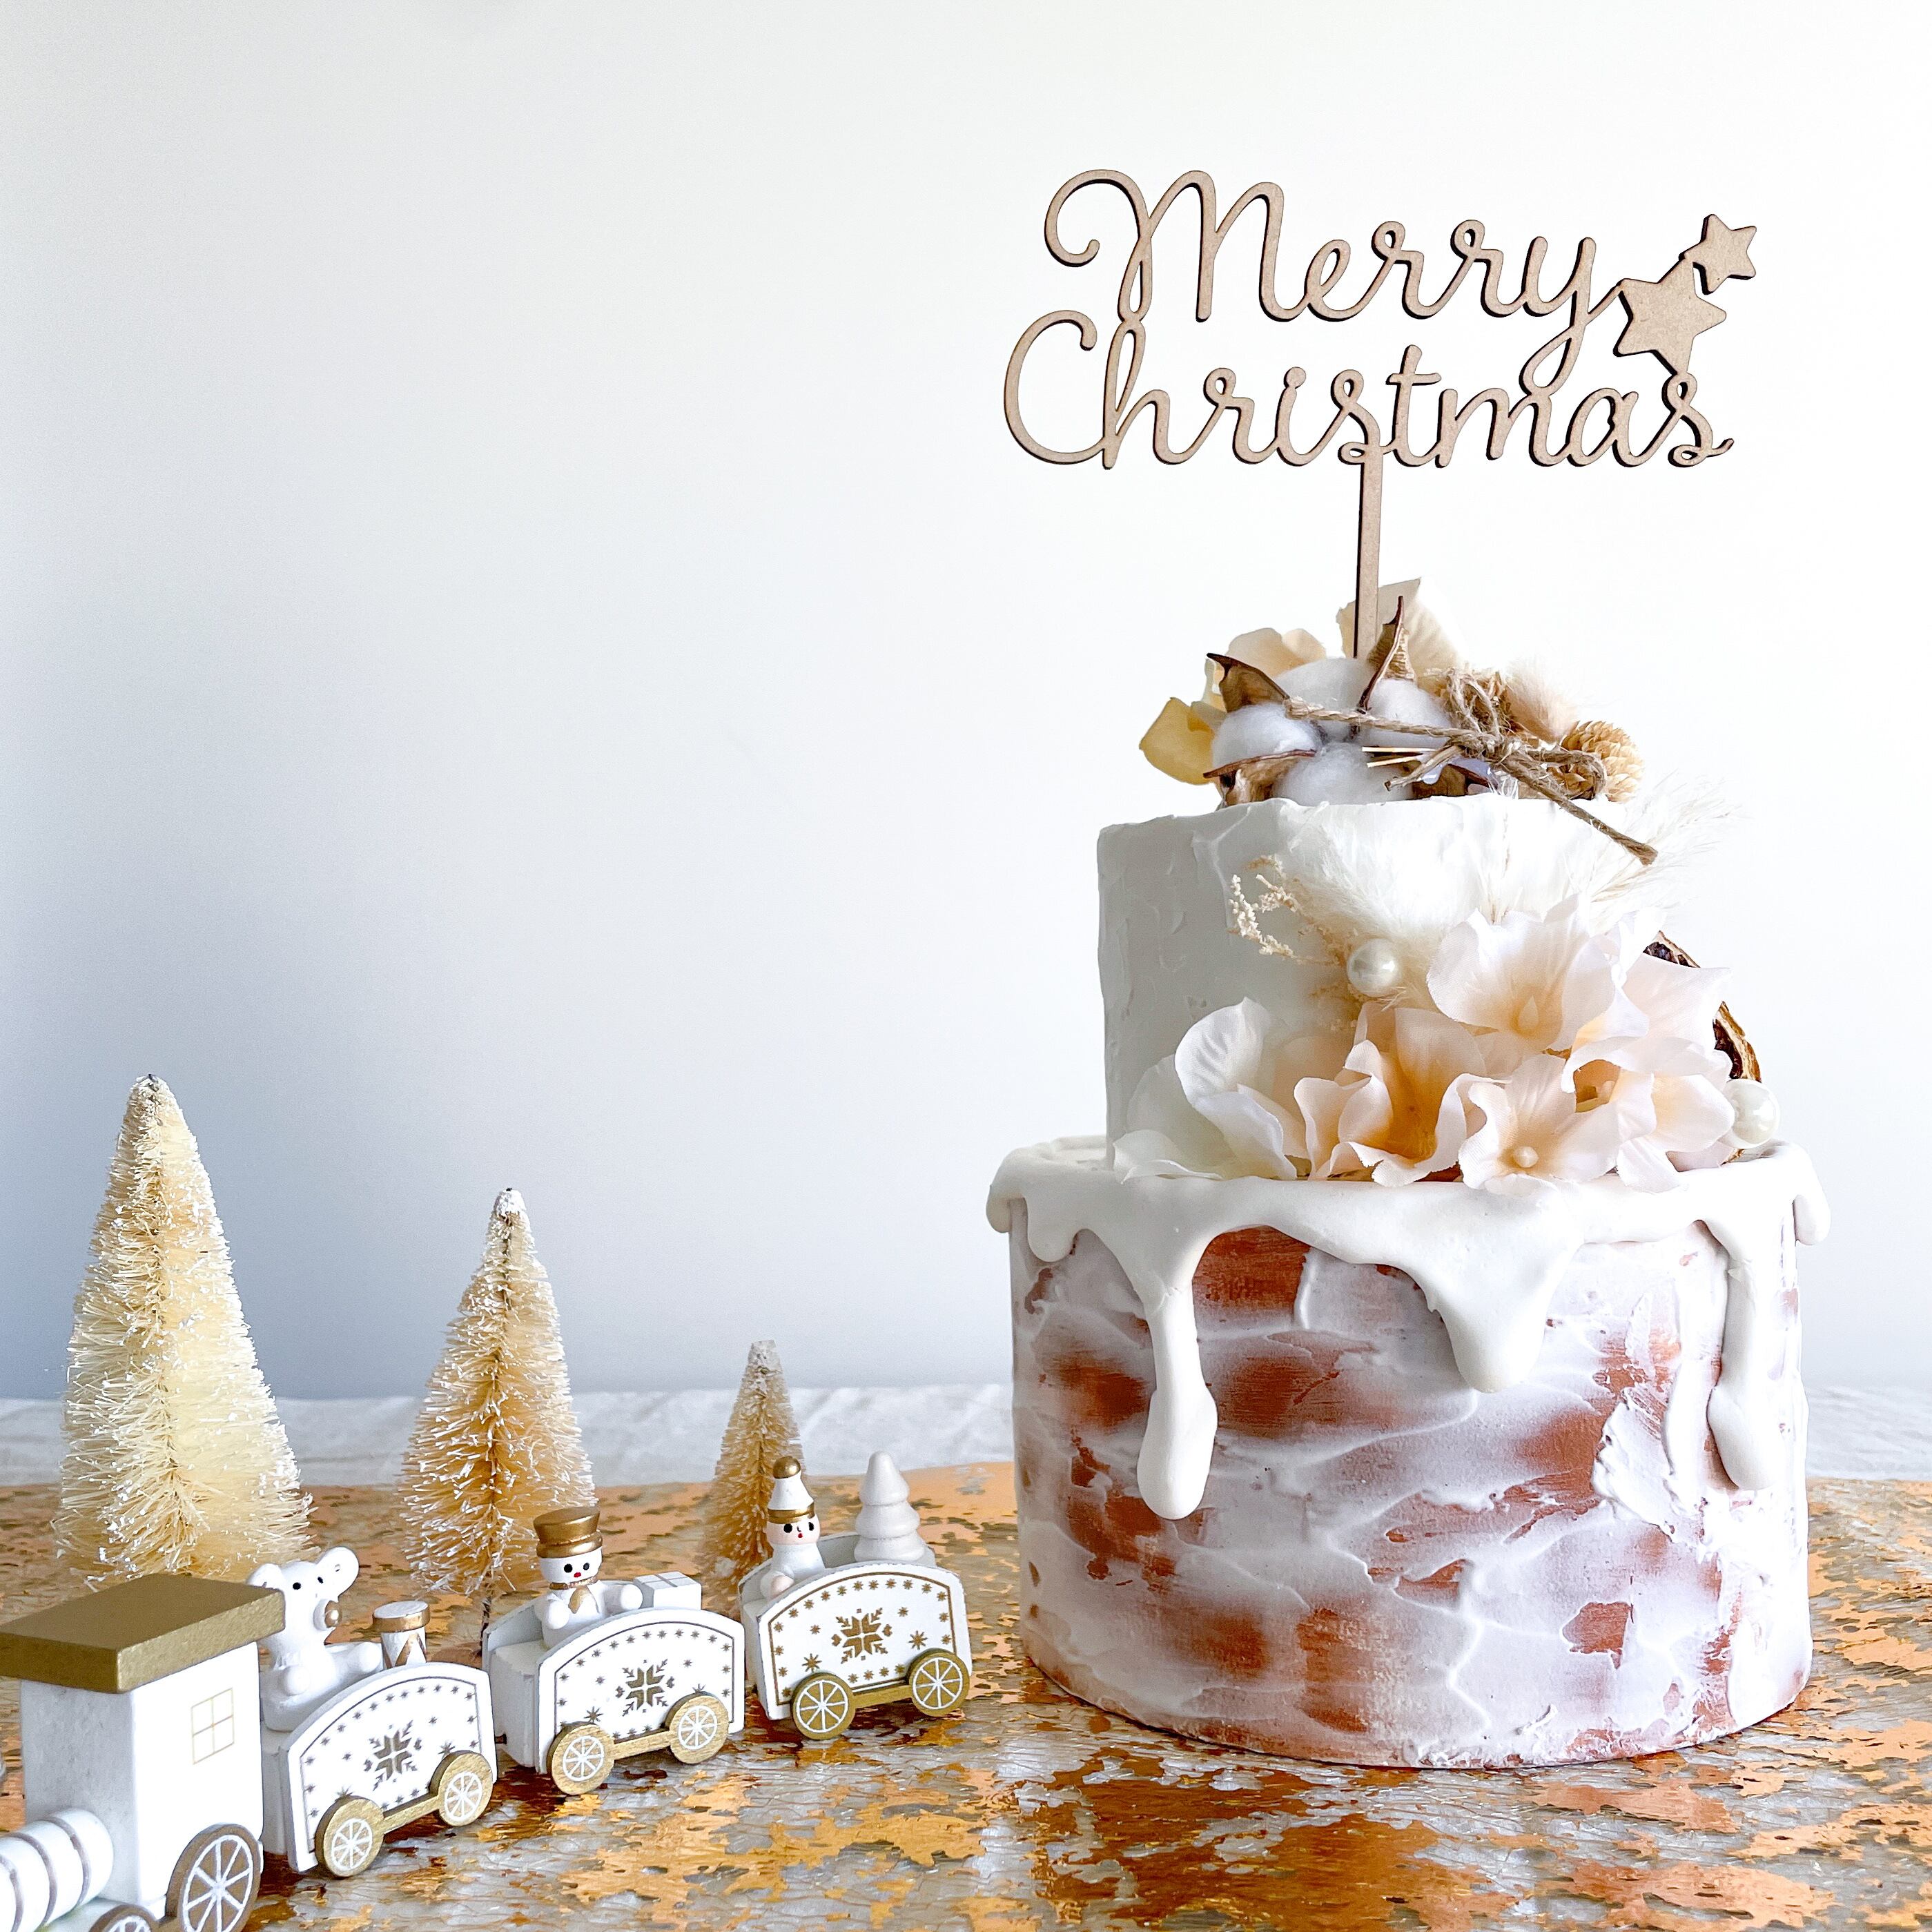 【 木製 ケーキトッパー 】Merry Christmas  英語 Xmas クリスマスフォト クリスマス飾り 装飾 ケーキtypeB